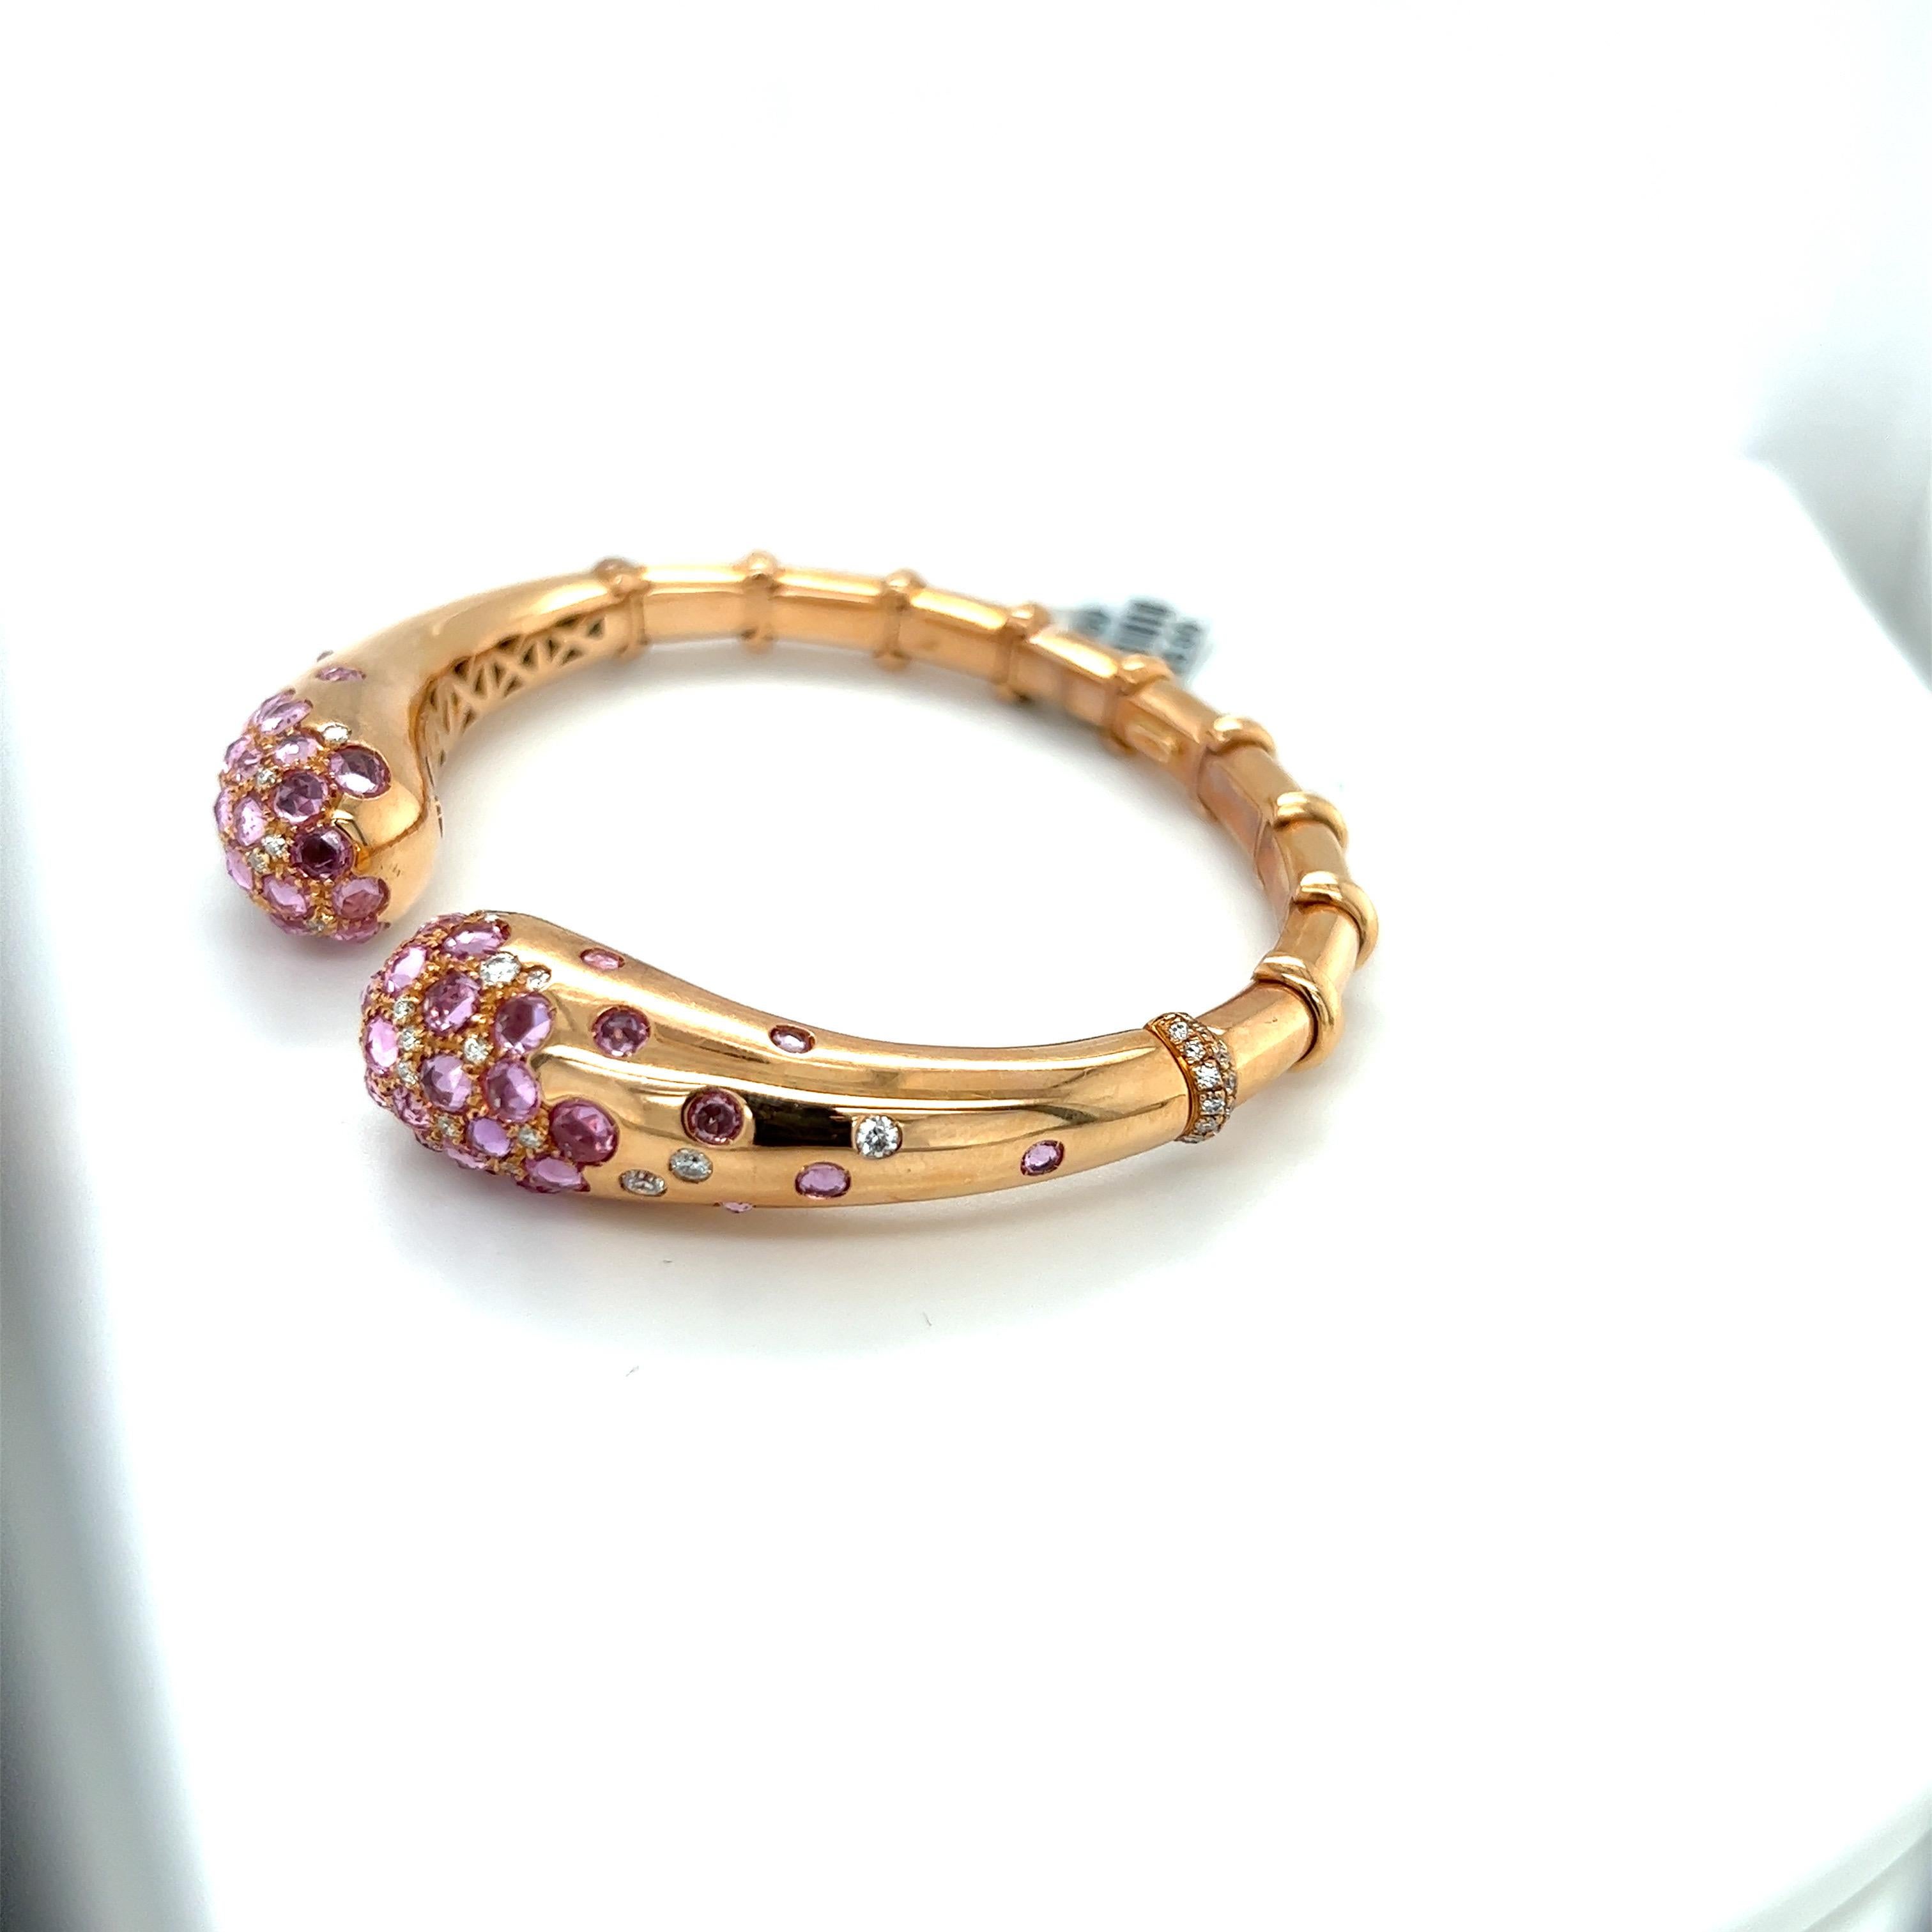 Magnifique bracelet en or rose 18 carats conçu par g. Verdi d'Italie pour Cellini NYC. Le bracelet ouvert est serti de 7,53 carats de saphirs roses taillés en rose et de 0,89 carats de diamants ronds de taille brillant. La mesure intérieure est de